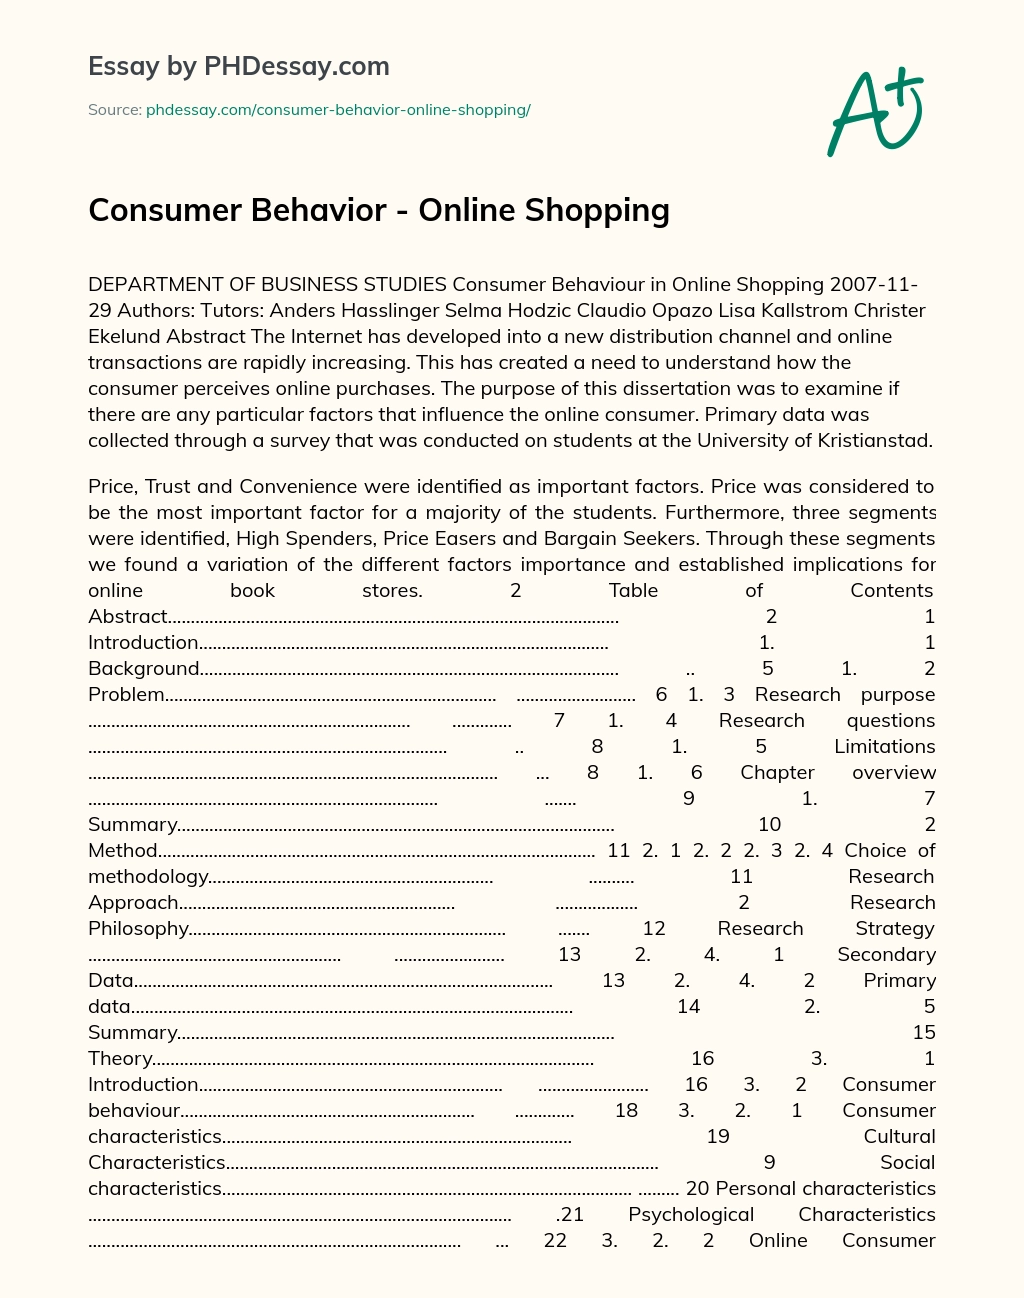 Consumer Behavior – Online Shopping essay